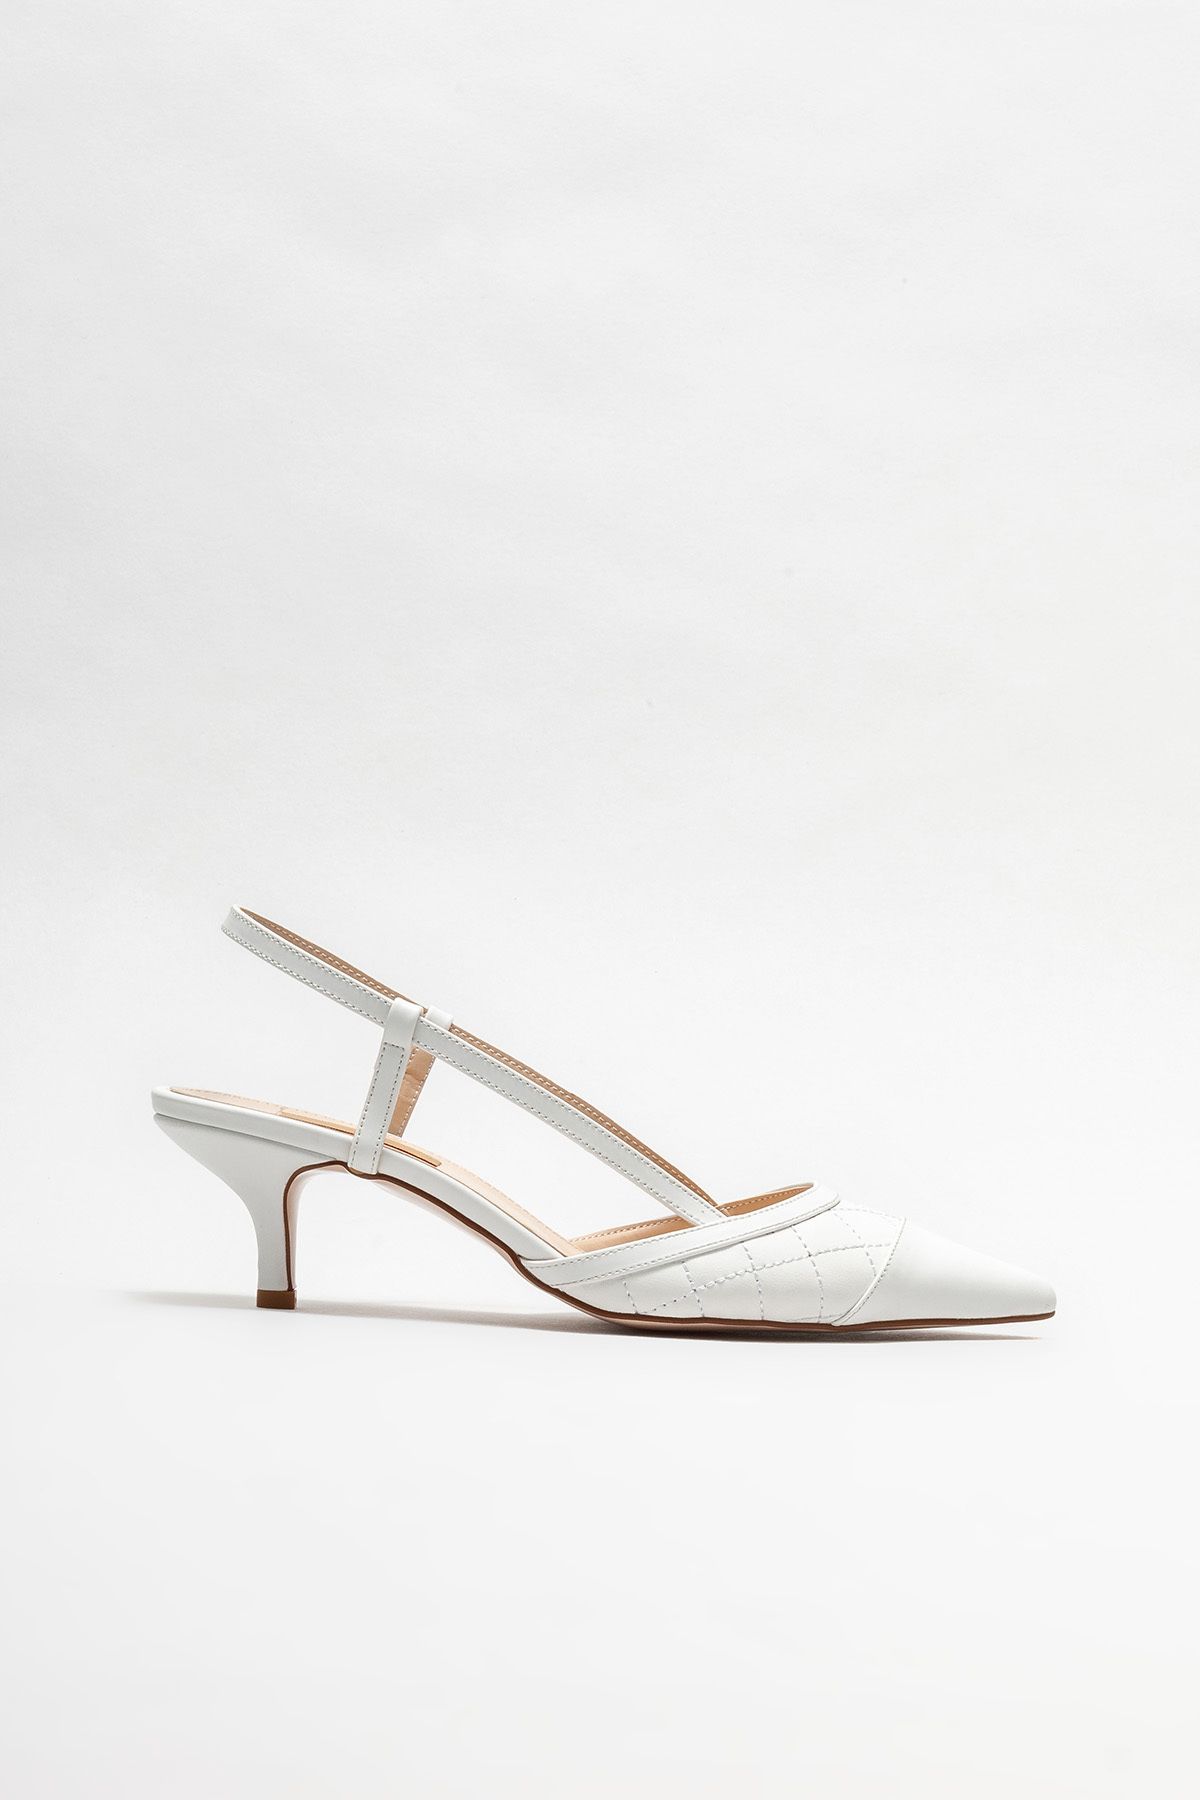 Elle Beyaz Kadın Topuklu Ayakkabı